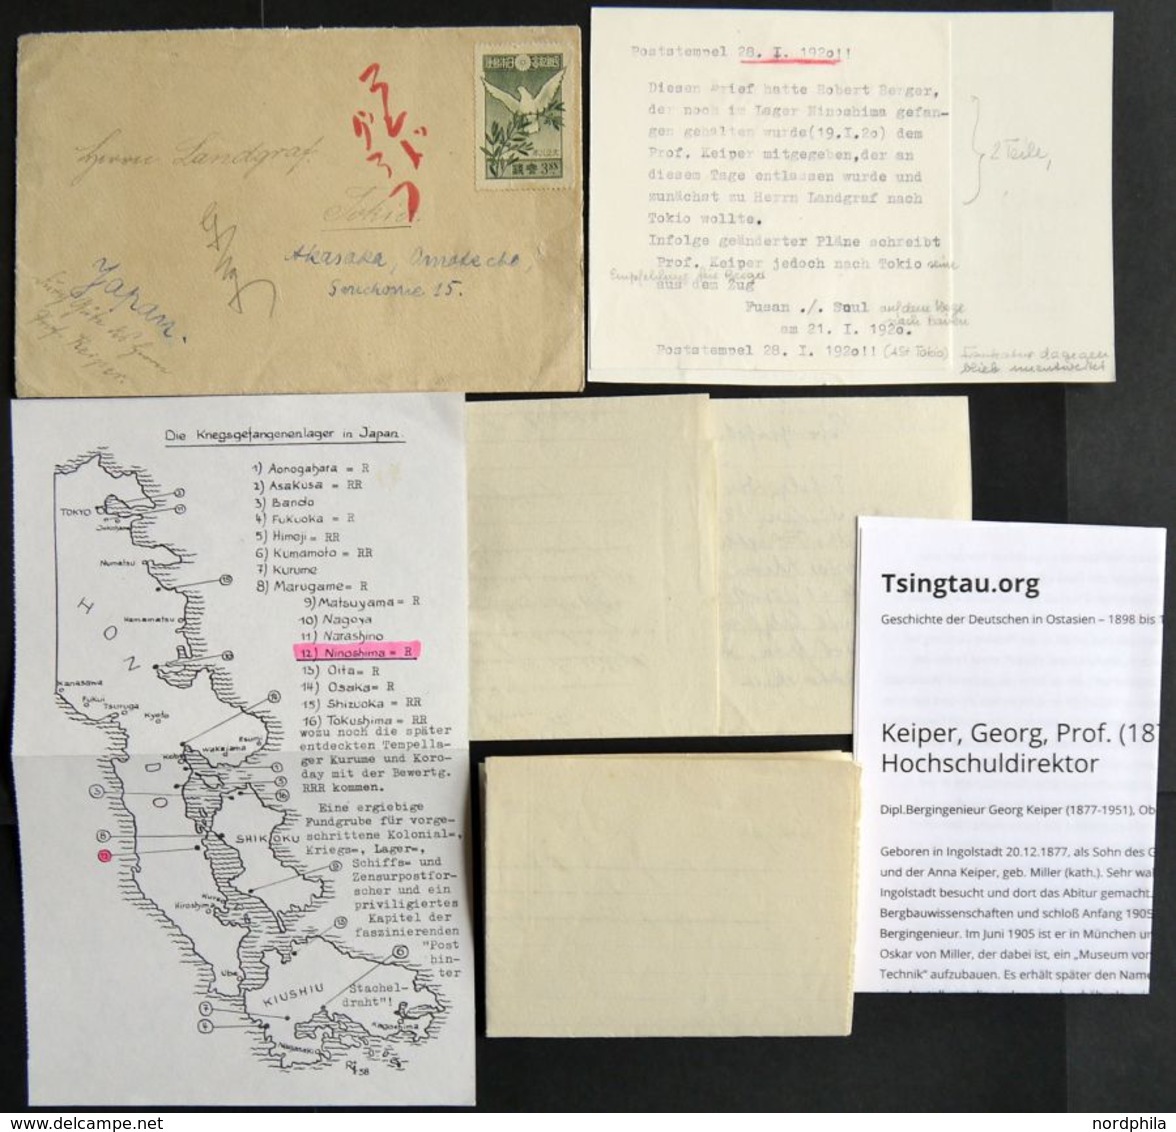 1920, Kiautschou-Kämpferhilfe, Brief Von Prof. Keiper An Herrn Landgraf In Tokio, Empfehlung Für Ninoshima Lagerinsassen - Nuovi